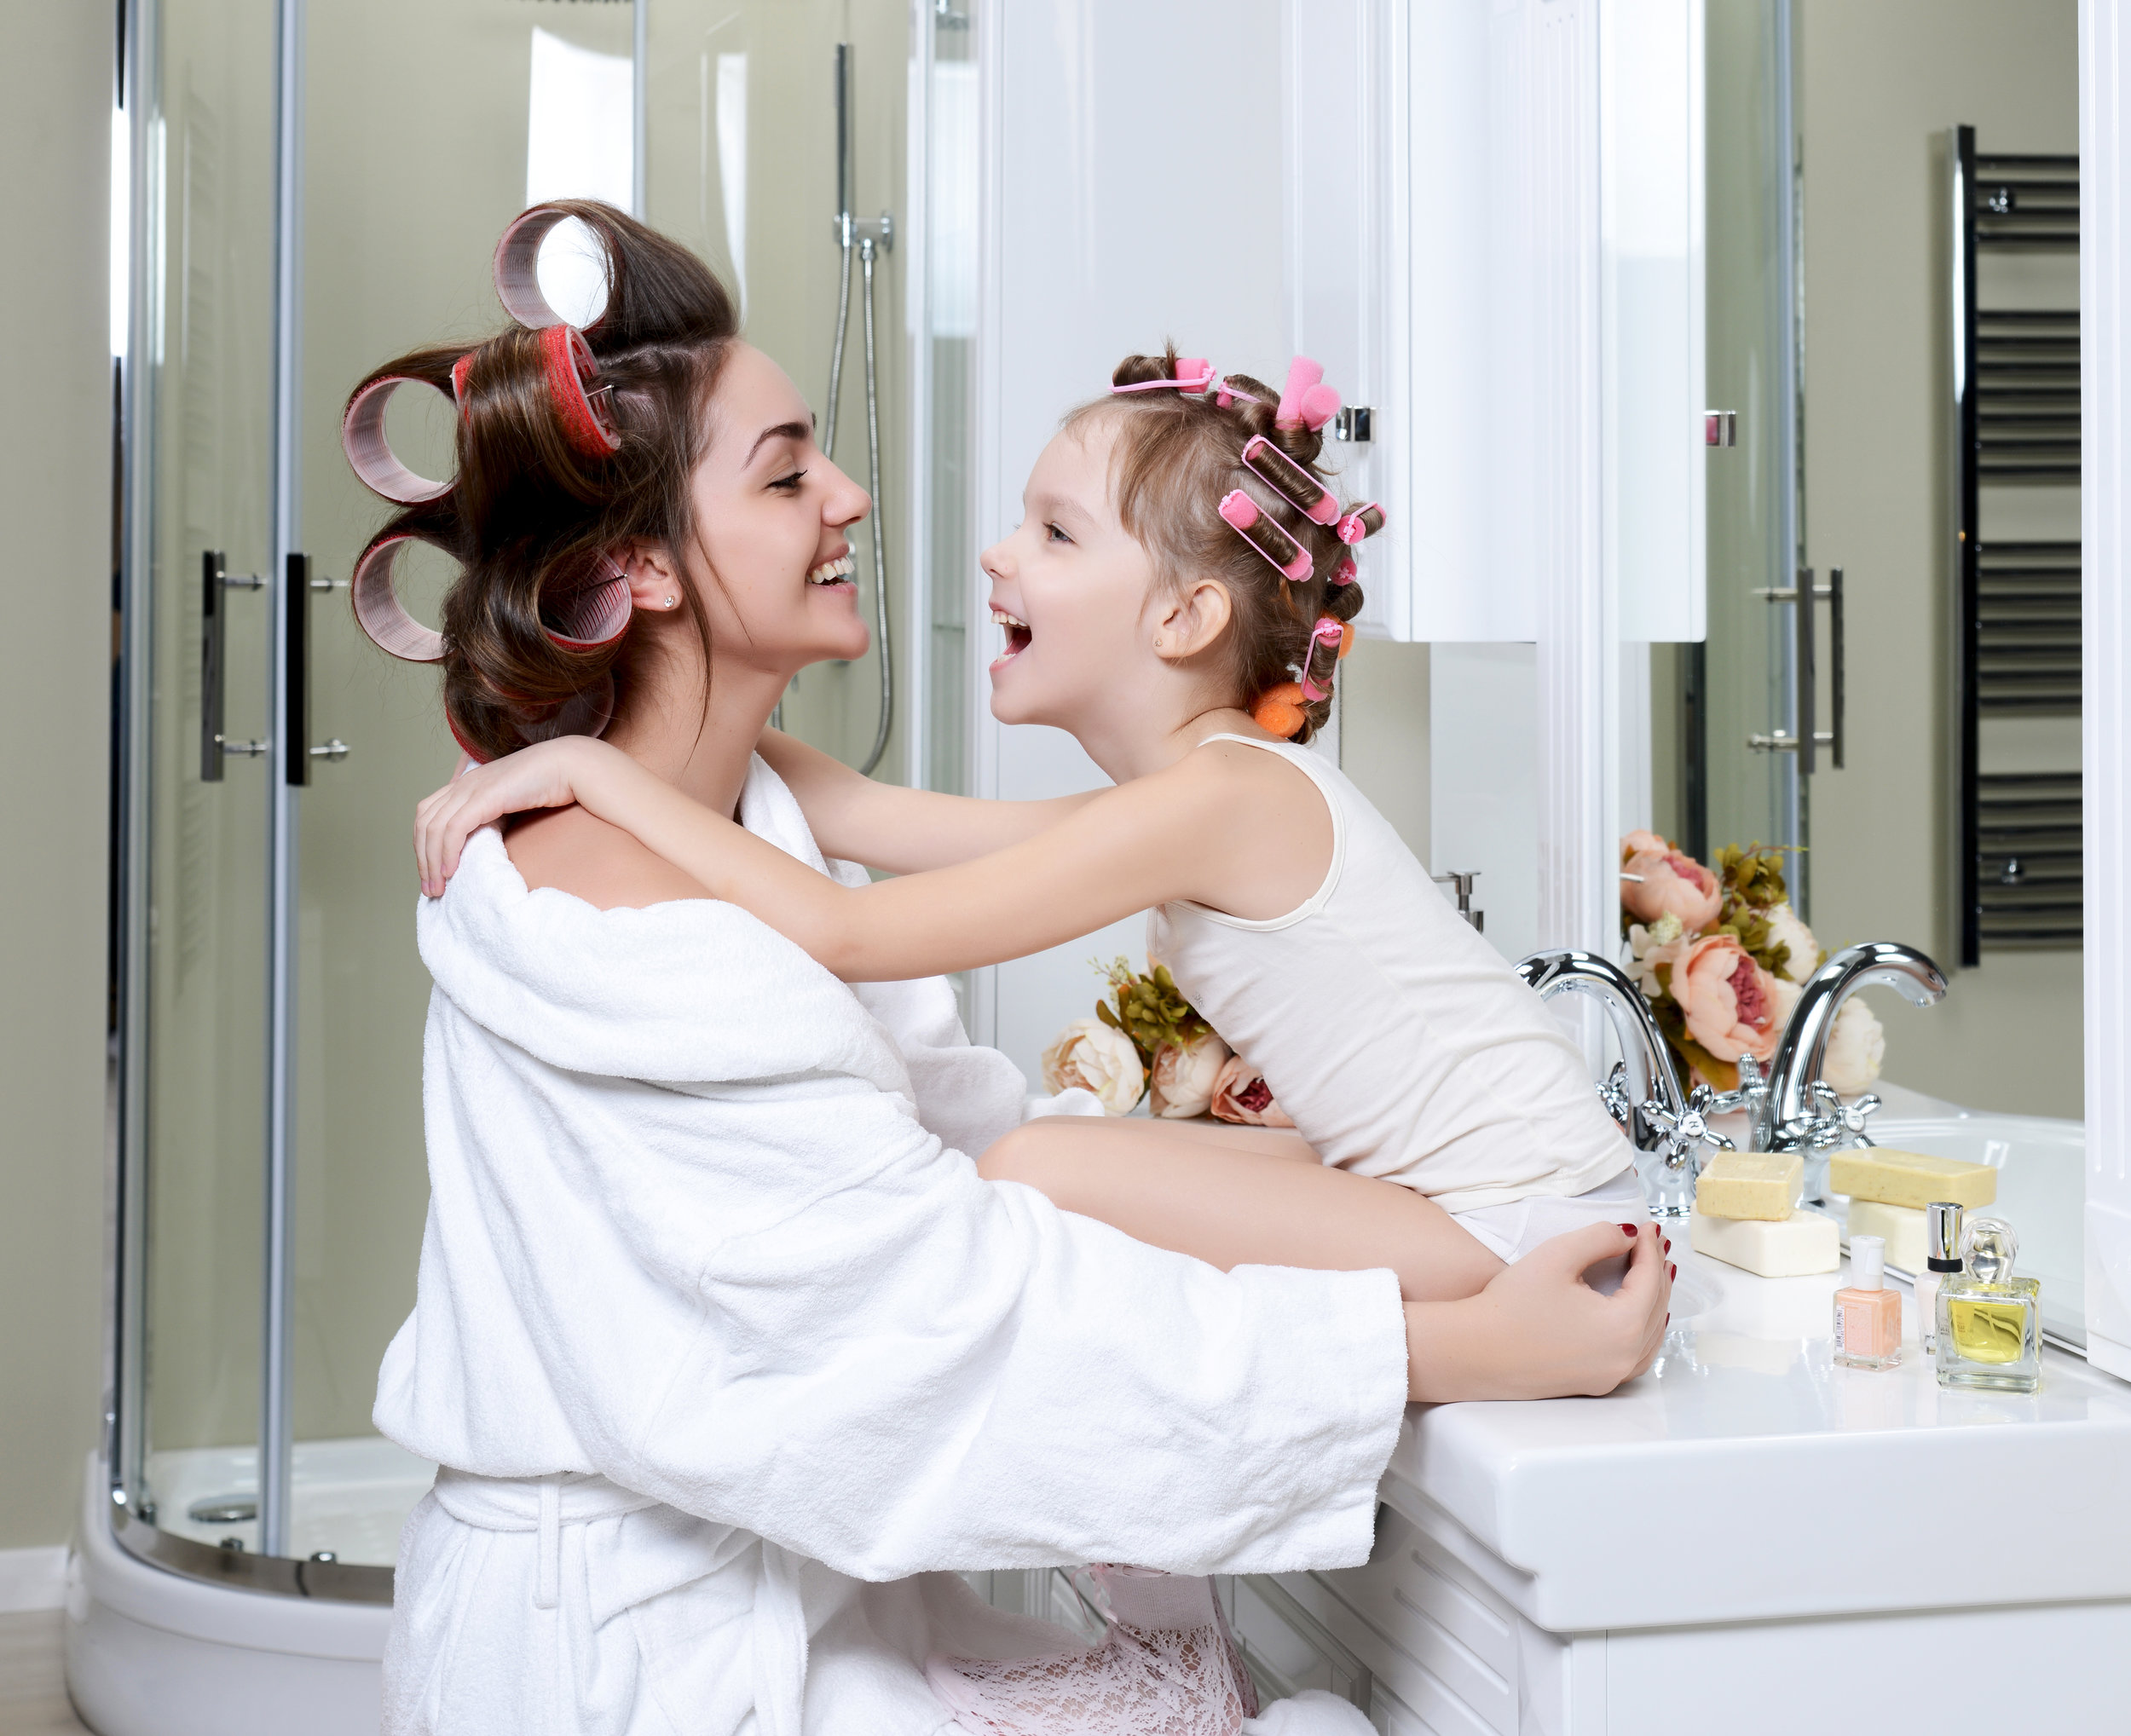 Daughter bath. Молодая мама с дочкой в ванной. Мама в бигуди у телевизора. Японская дочь Bath. Bath mother daughter Highlights.